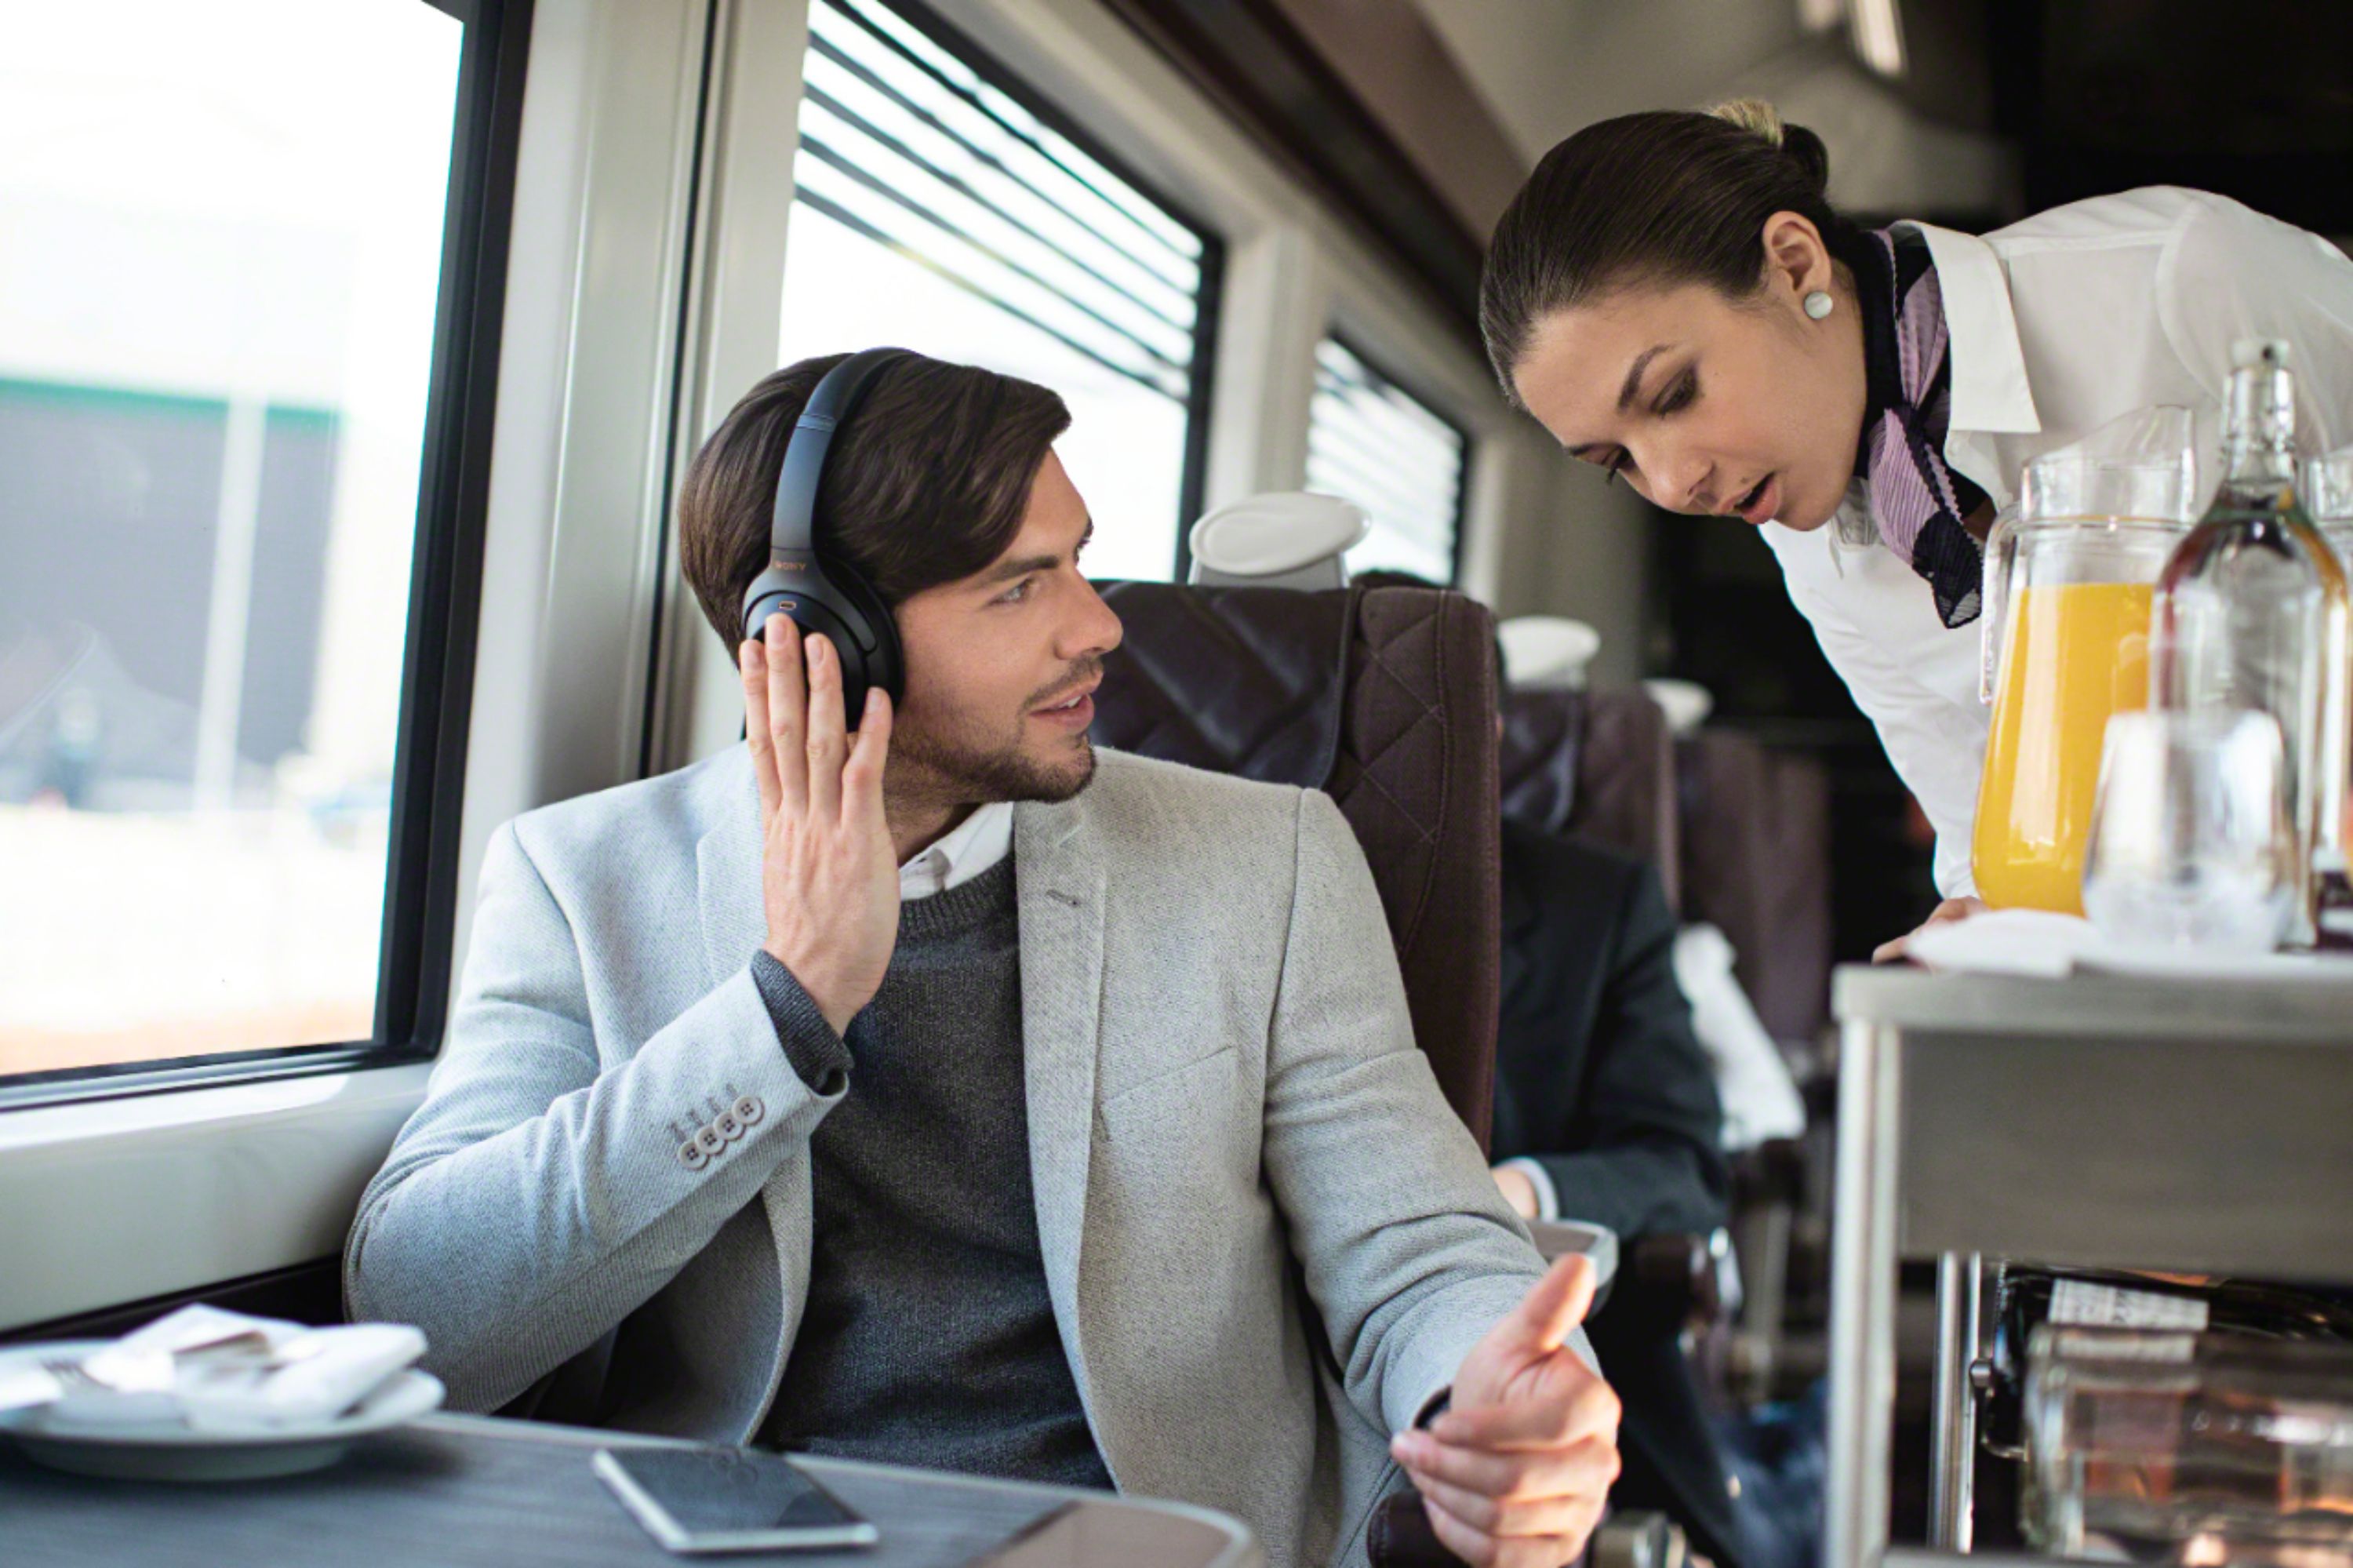 オーディオ機器 ヘッドフォン Best Buy: Sony WH-1000XM3 Wireless Noise Cancelling Over-the-Ear 